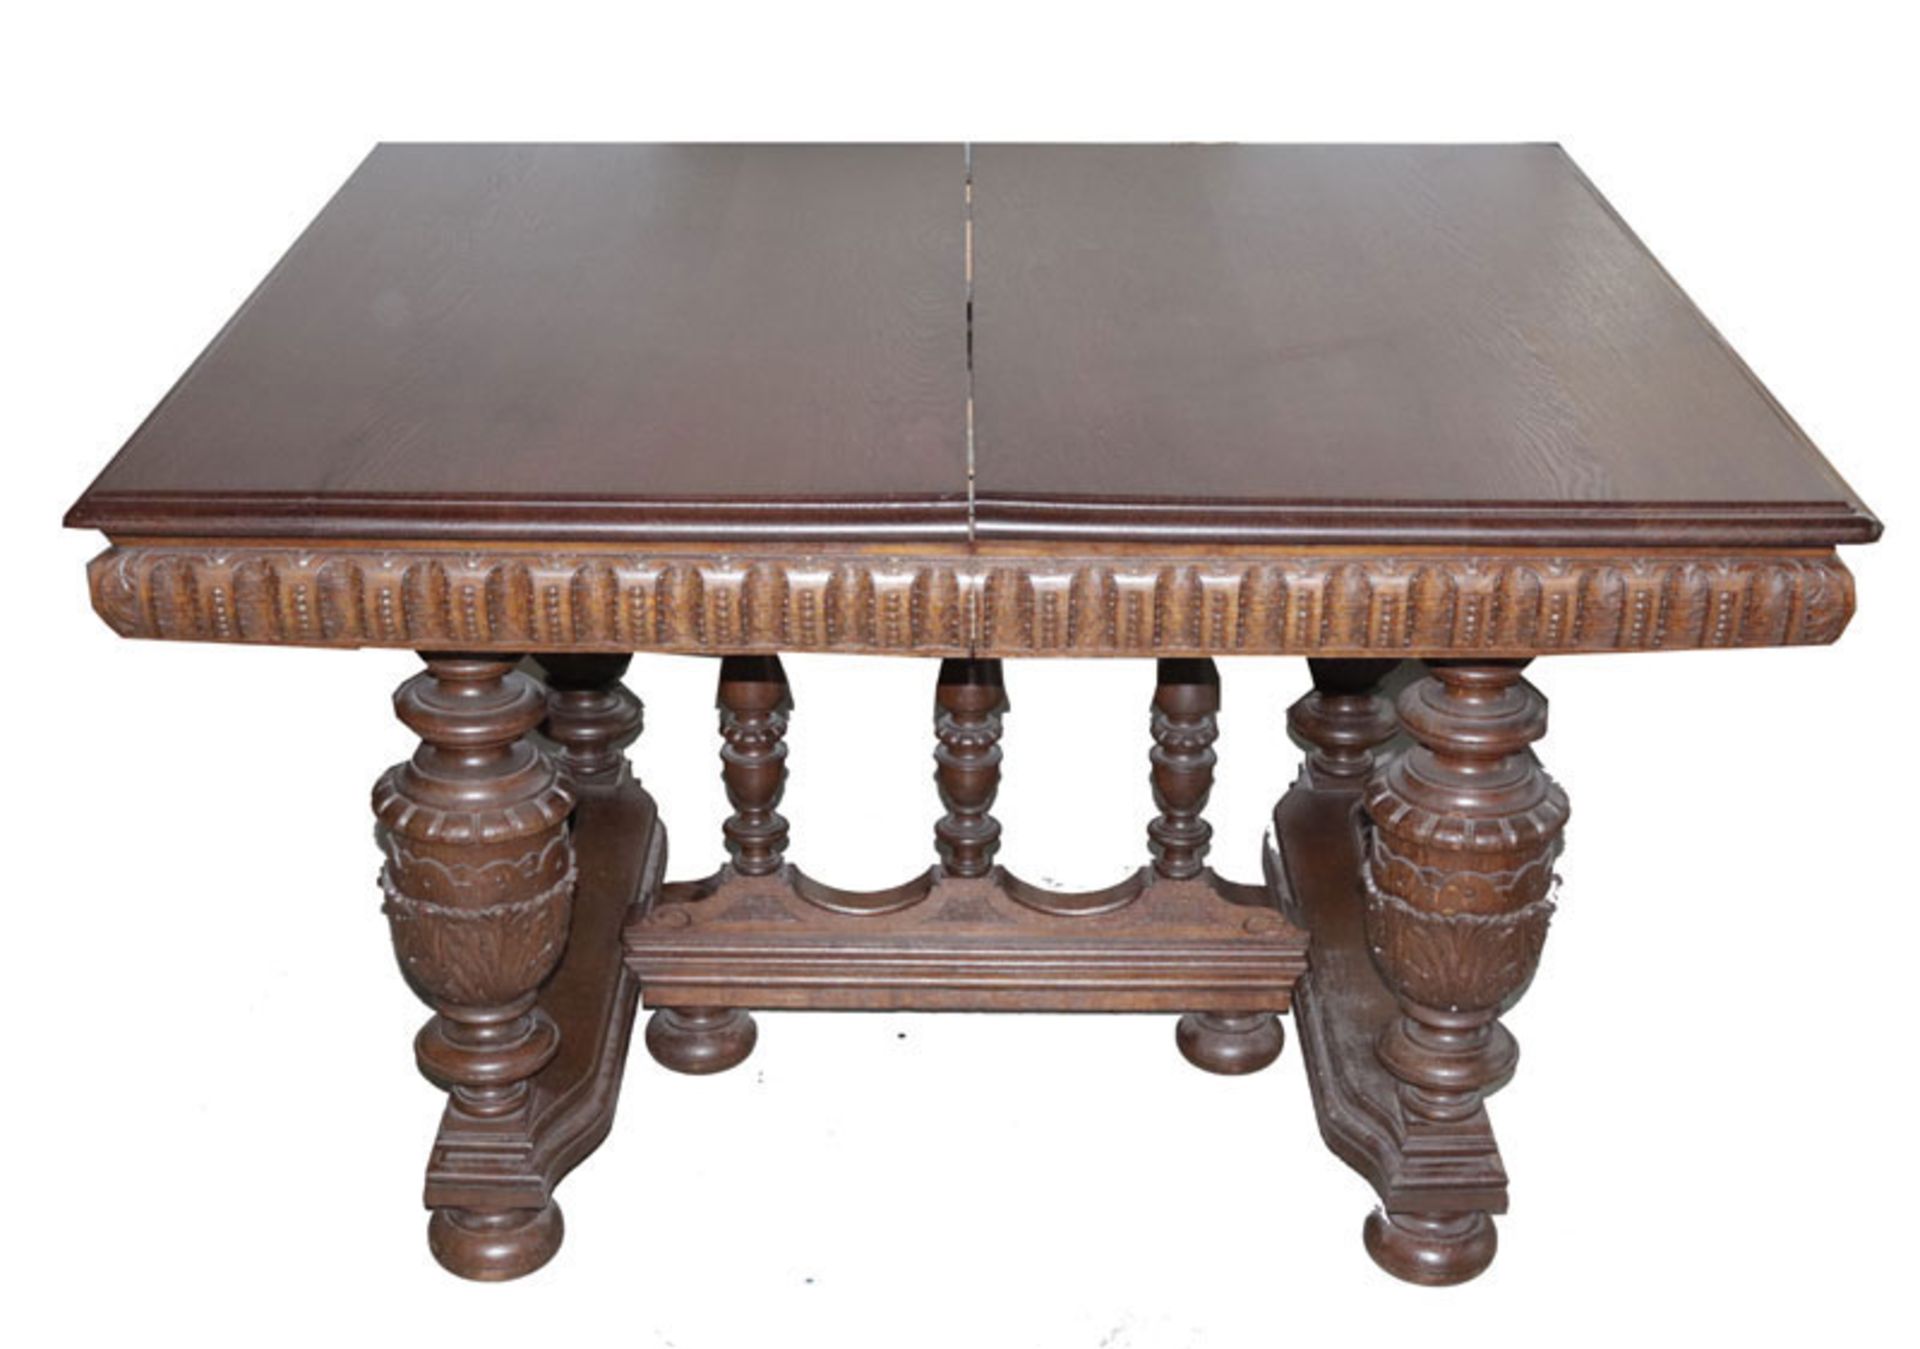 Tisch, Ende 19. Jahrhundert, Unterteil reich beschnitzt, ausziehbar, Einlegplatten fehlen, H 76 cm, 